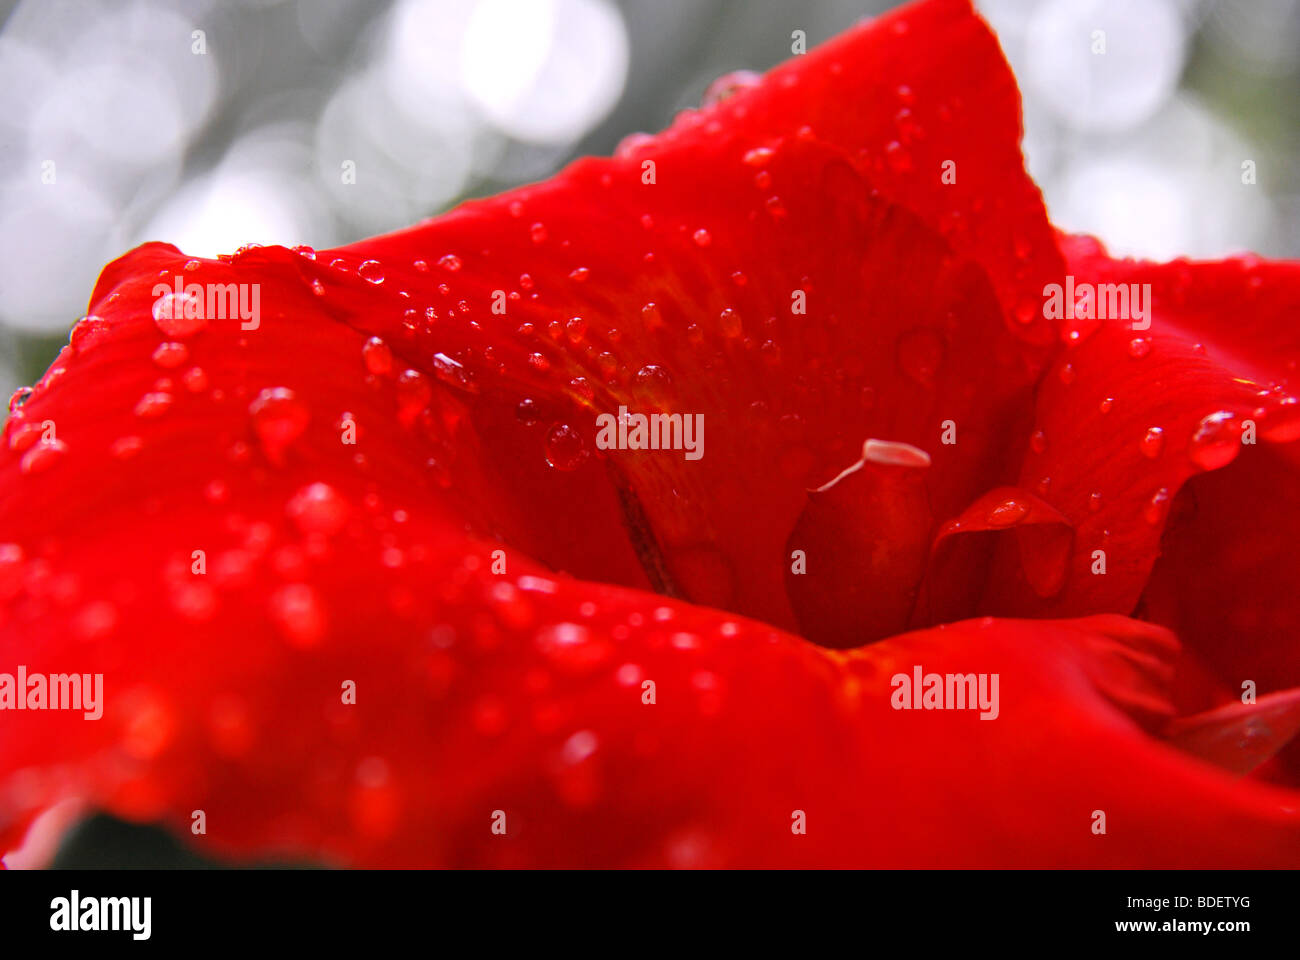 Regentropfen, ein Bild der Natur Farbkontrast. eine frische rote Blume mit Tropfen symbolisiert Energie und Jugendlichkeit. Stockfoto